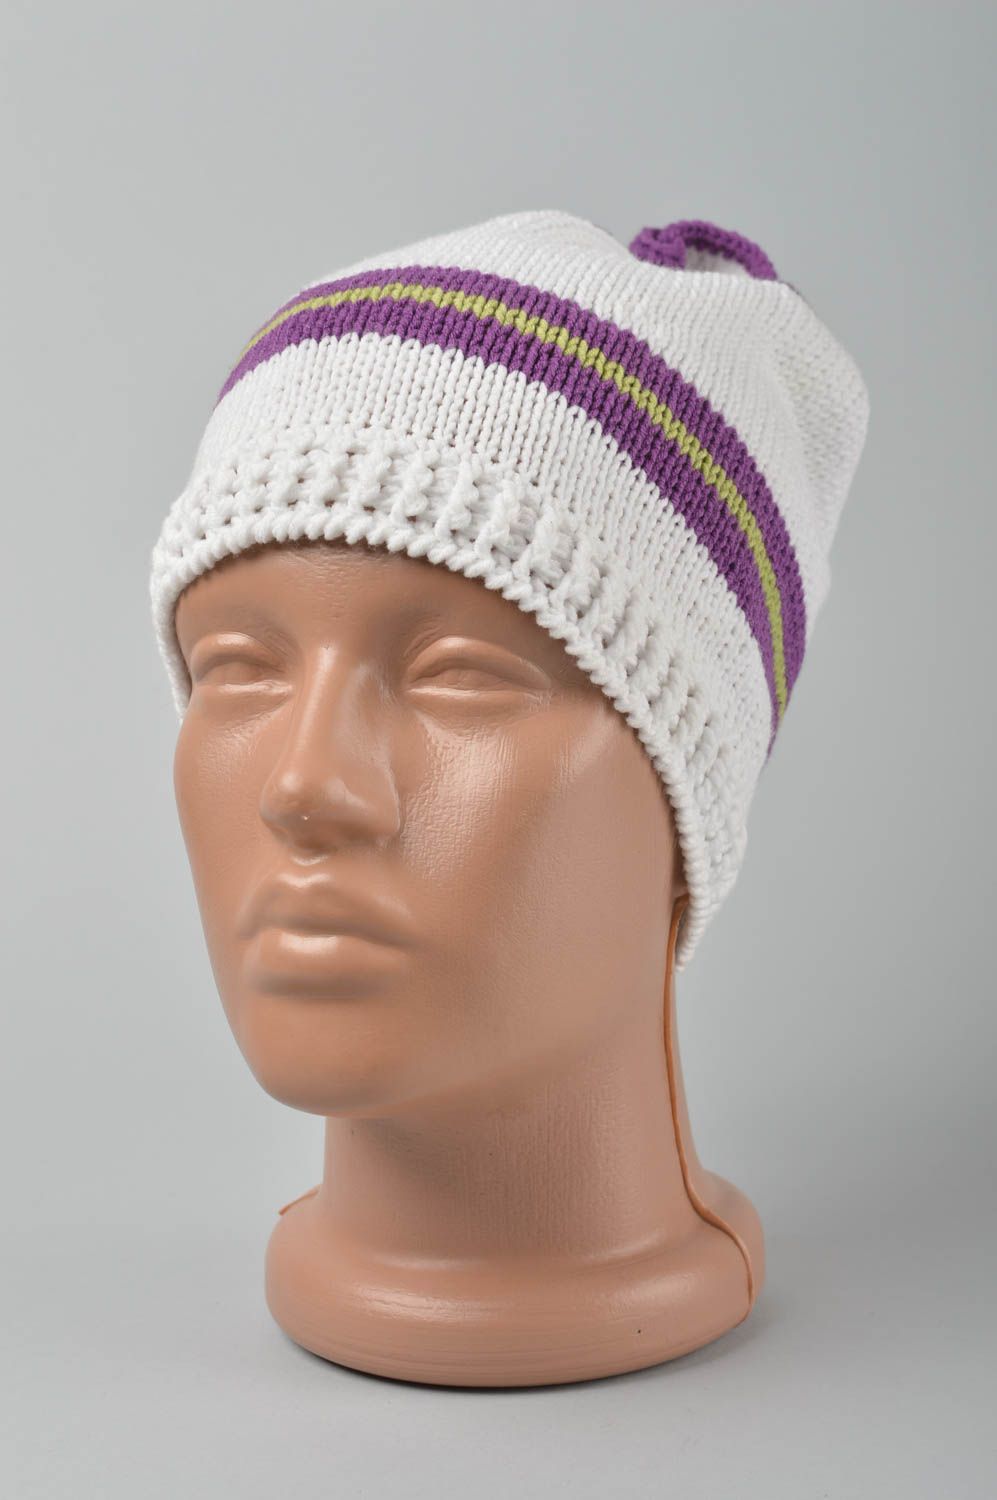 Handmade hat crochet headdress for children warm hat for baby winter hat photo 1